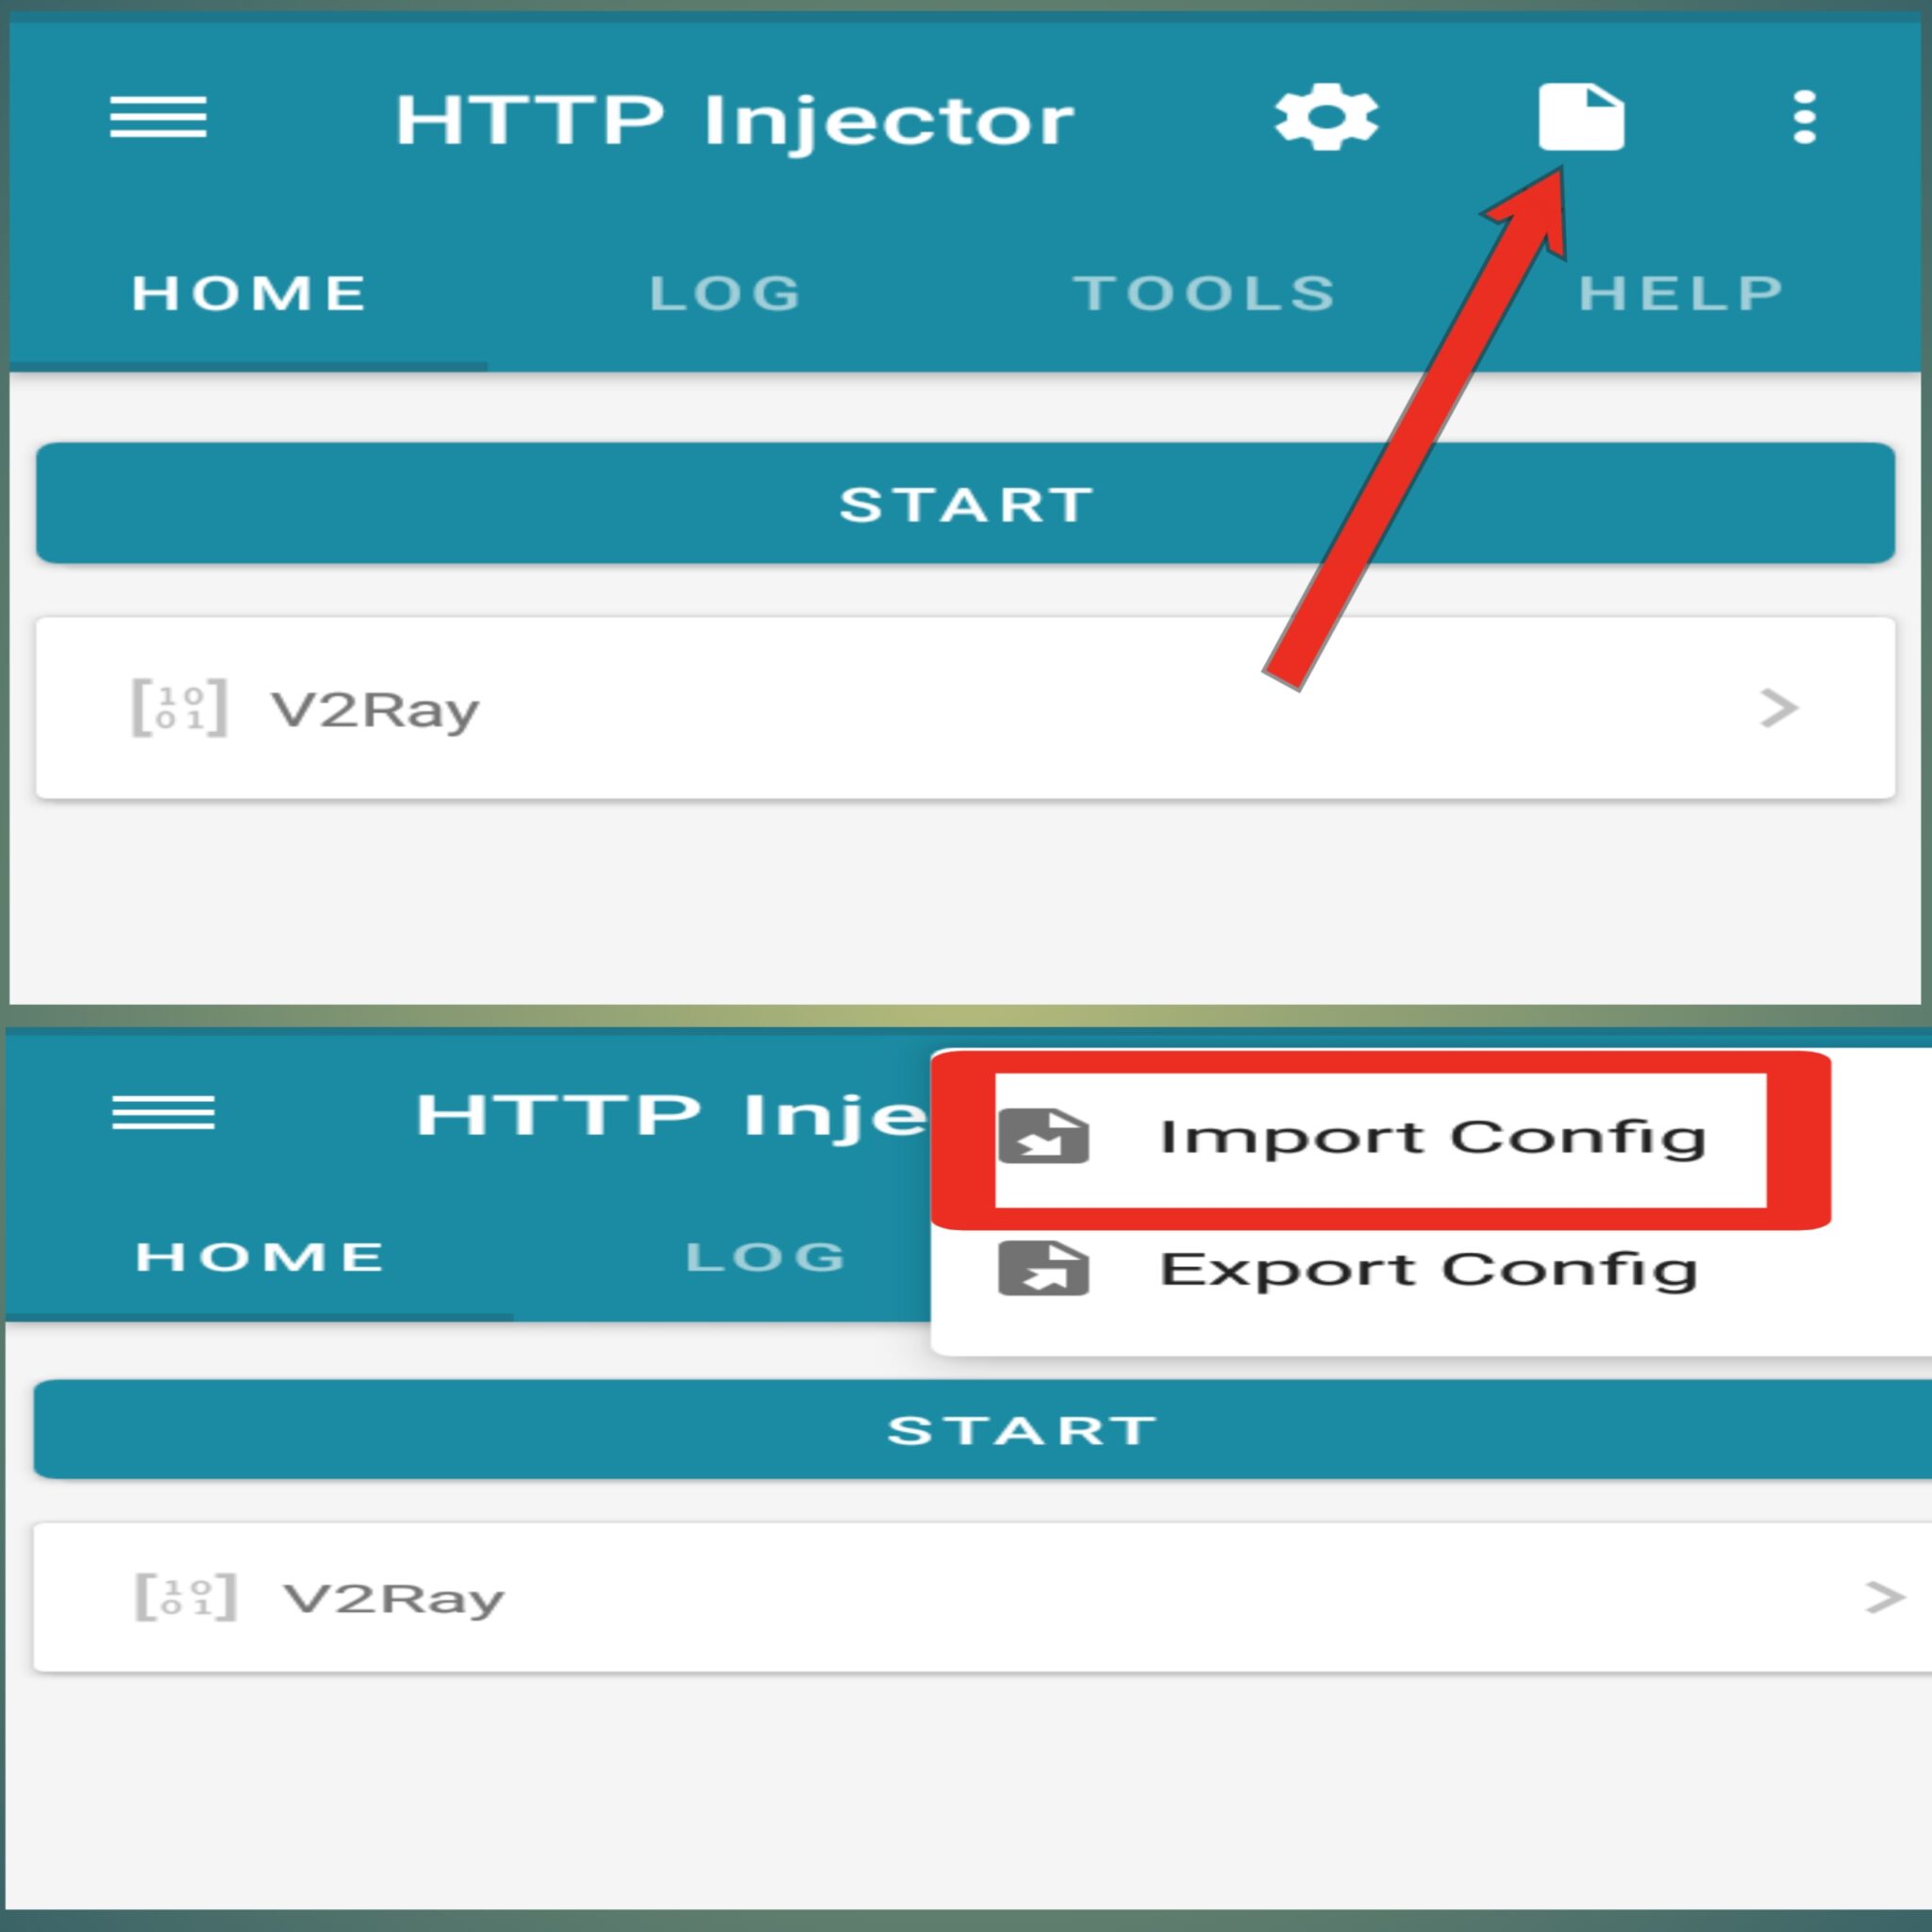 ¡Configura HTTP Injector y accede a Internet gratis ahora mismo!